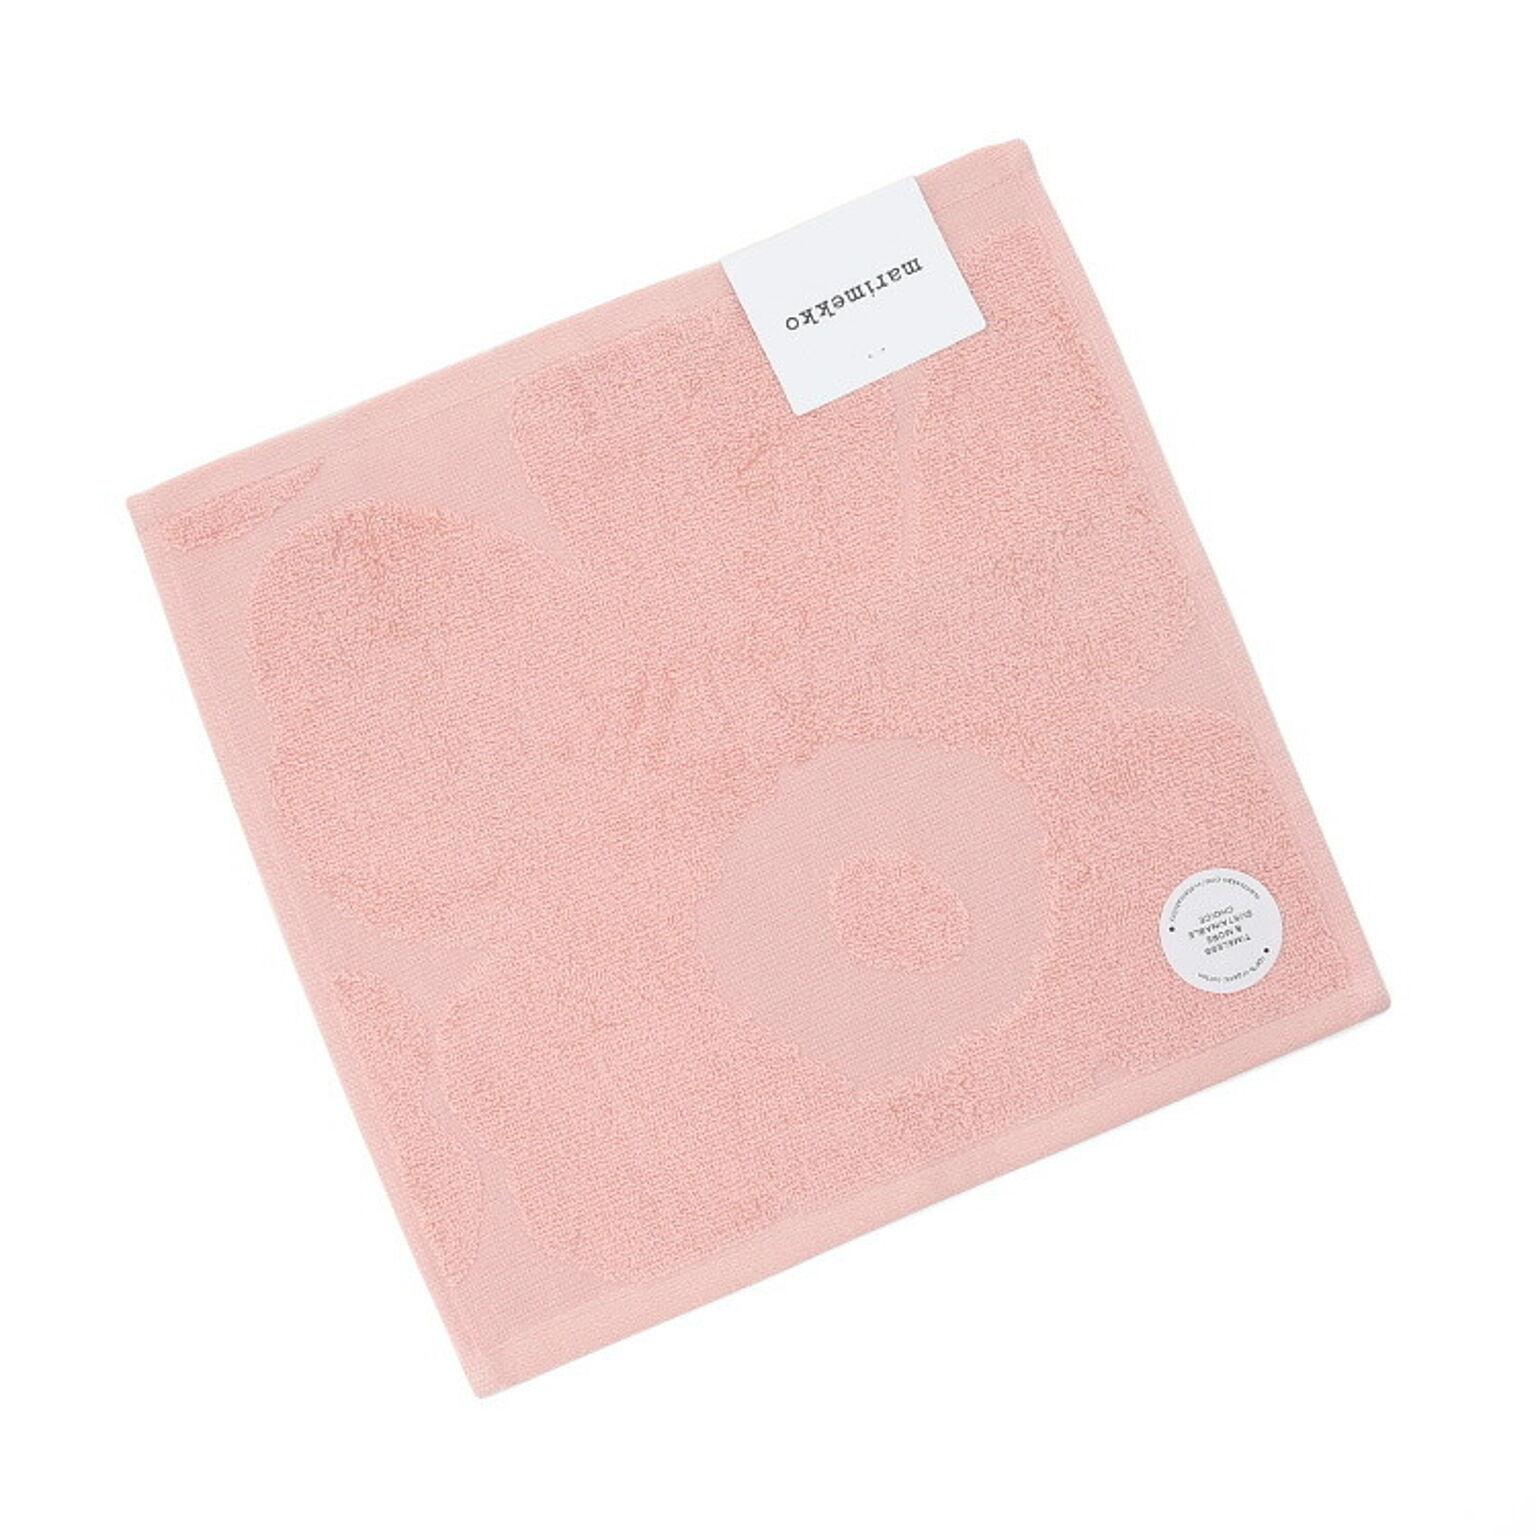 マリメッコ ウニッコ ミニタオル 30×30cm ピンク marimekko UNIKKO [ネコポス対応可(2枚まで)]